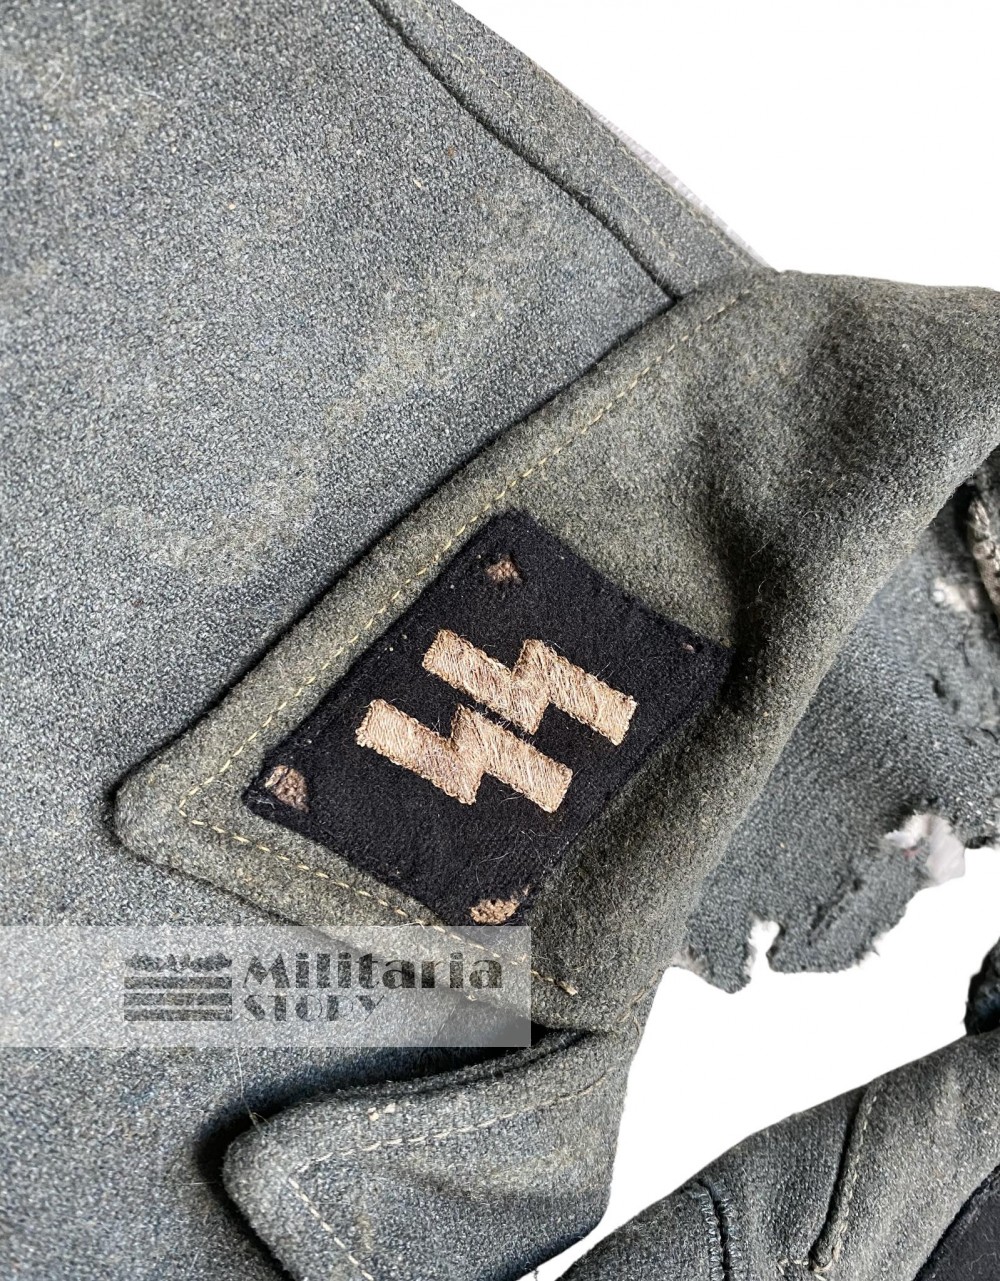 M44 Waffen SS tunic - M44 Waffen SS tunic: German Uniforms